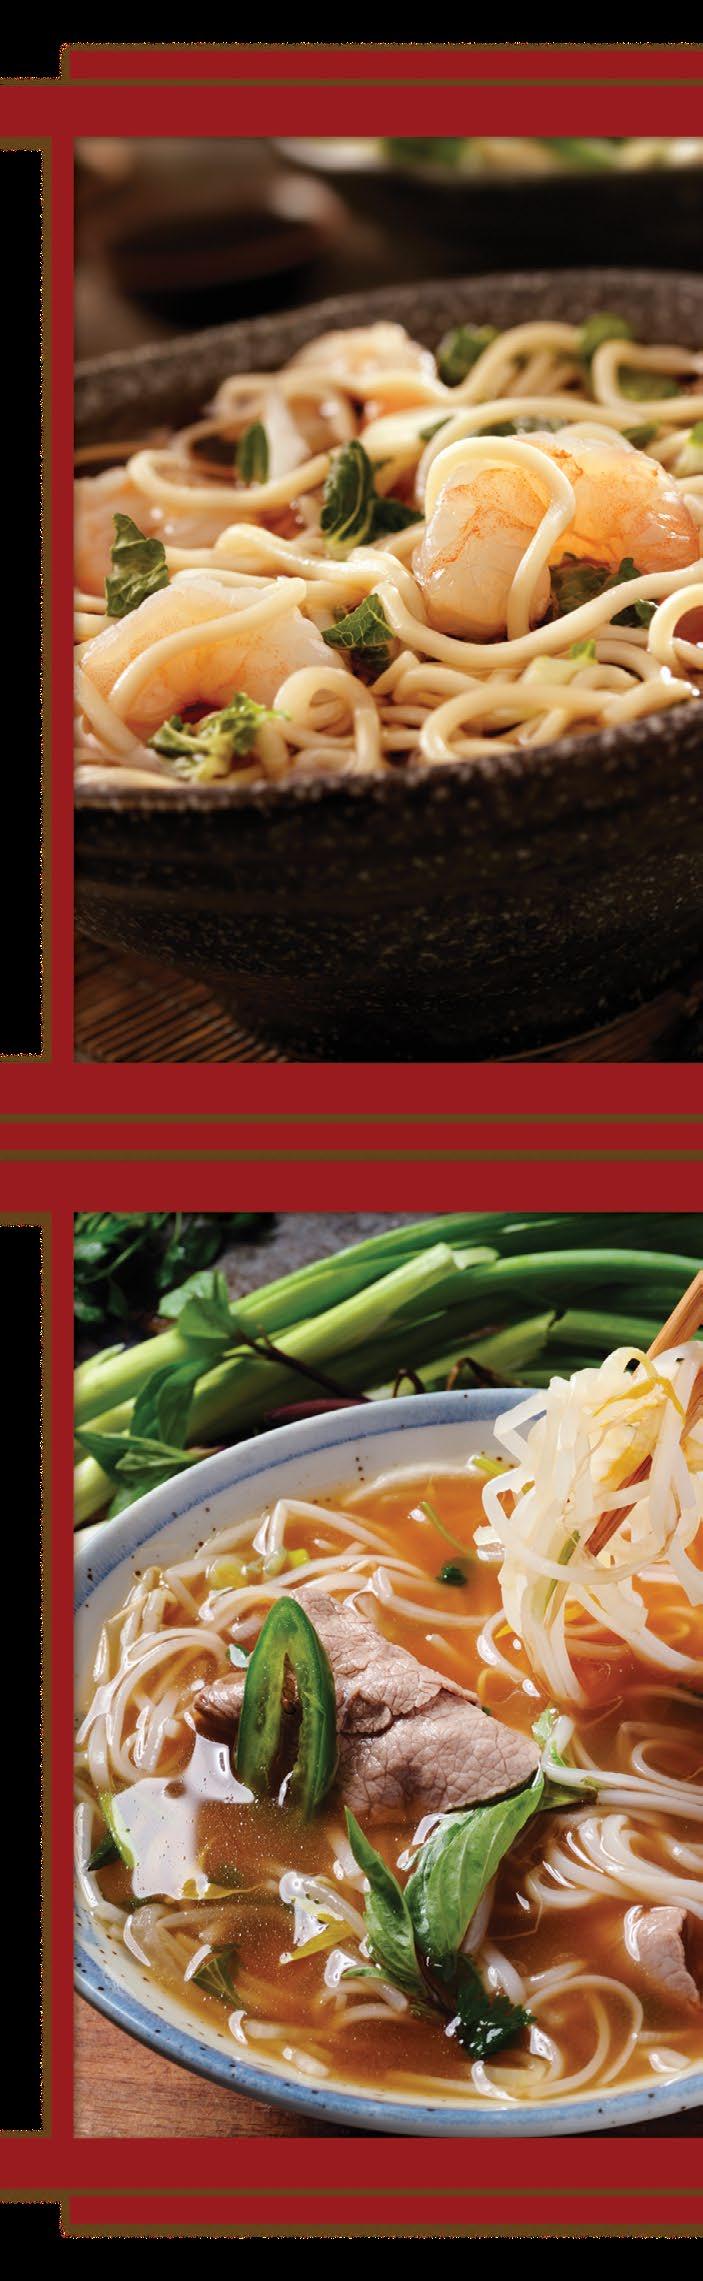 湯麵/粉 NOODLE SOUP 雲吞湯麵/粉 Wonton Noodle Soup Shrimp, pork, seasonal greens and scallions 越式牛肉粉 Vietnamese Beef Noodle Soup Slices beef eye round, rice noodle, onion, bean sprouts, basil and lime 12.